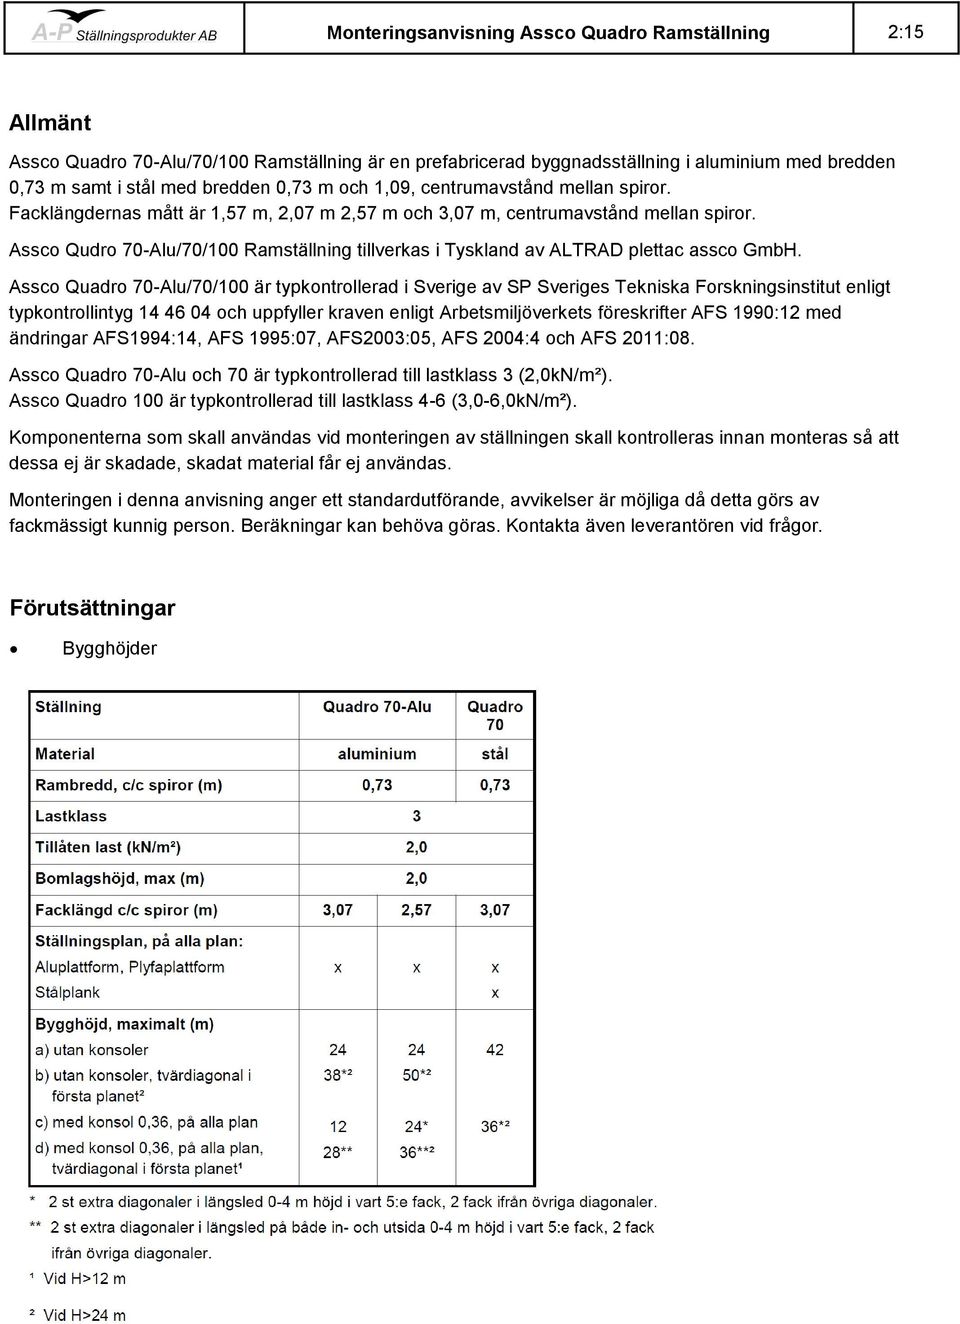 Assco Quadro 70-Alu/70/100 är typkontrollerad i Sverige av SP Sveriges Tekniska Forskningsinstitut enligt typkontrollintyg 14 46 04 och uppfyller kraven enligt Arbetsmiljöverkets föreskrifter AFS